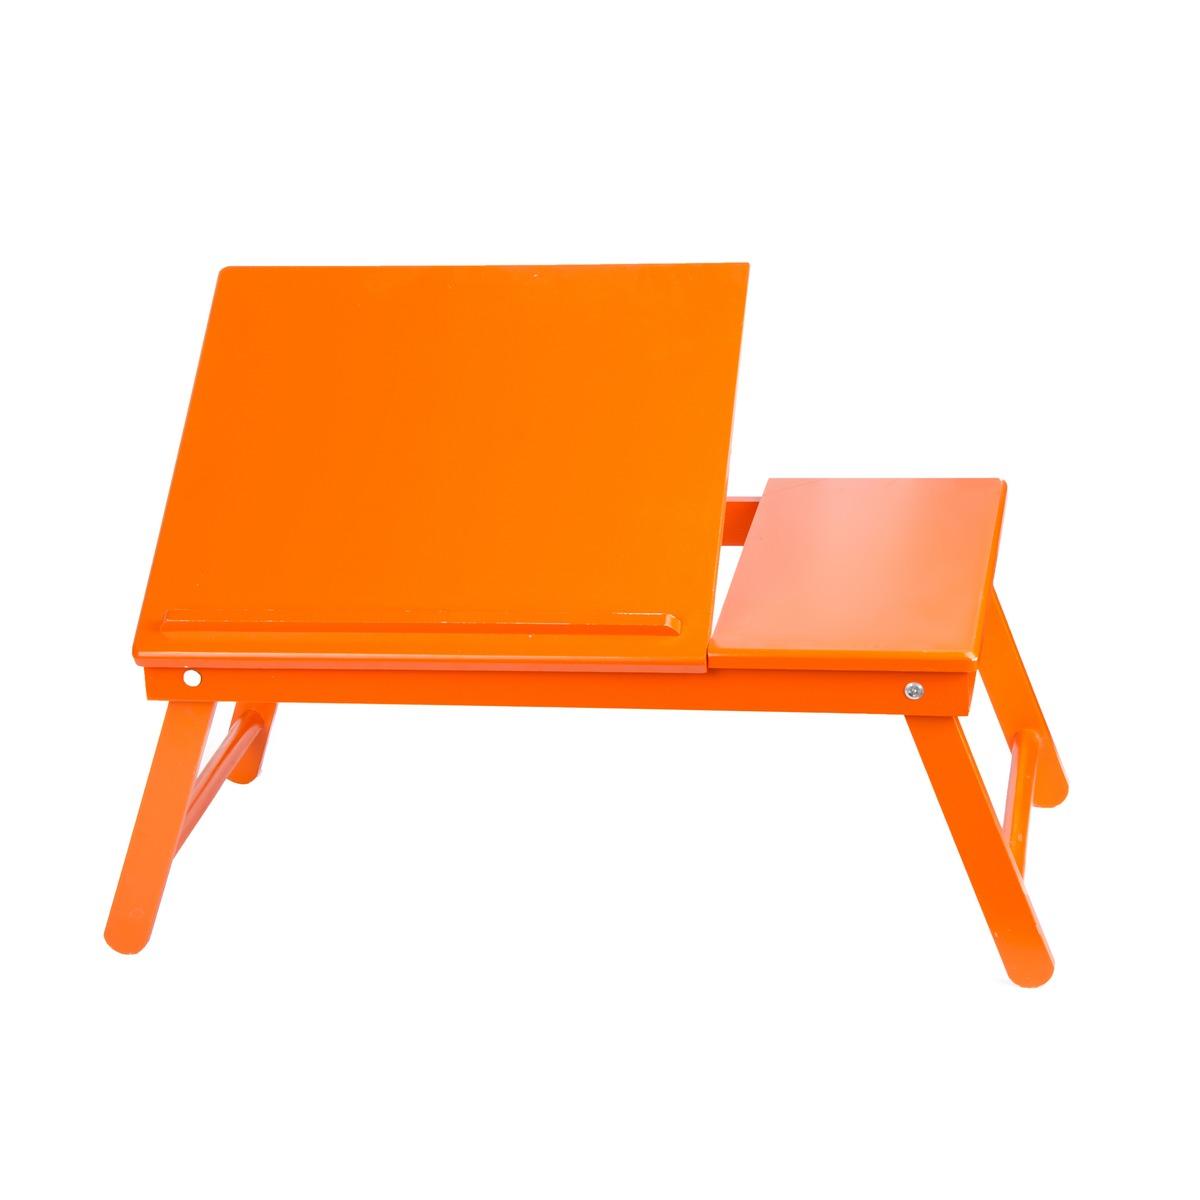 Support pour ordinateur - 55 x 35 x 25 cm - Orange